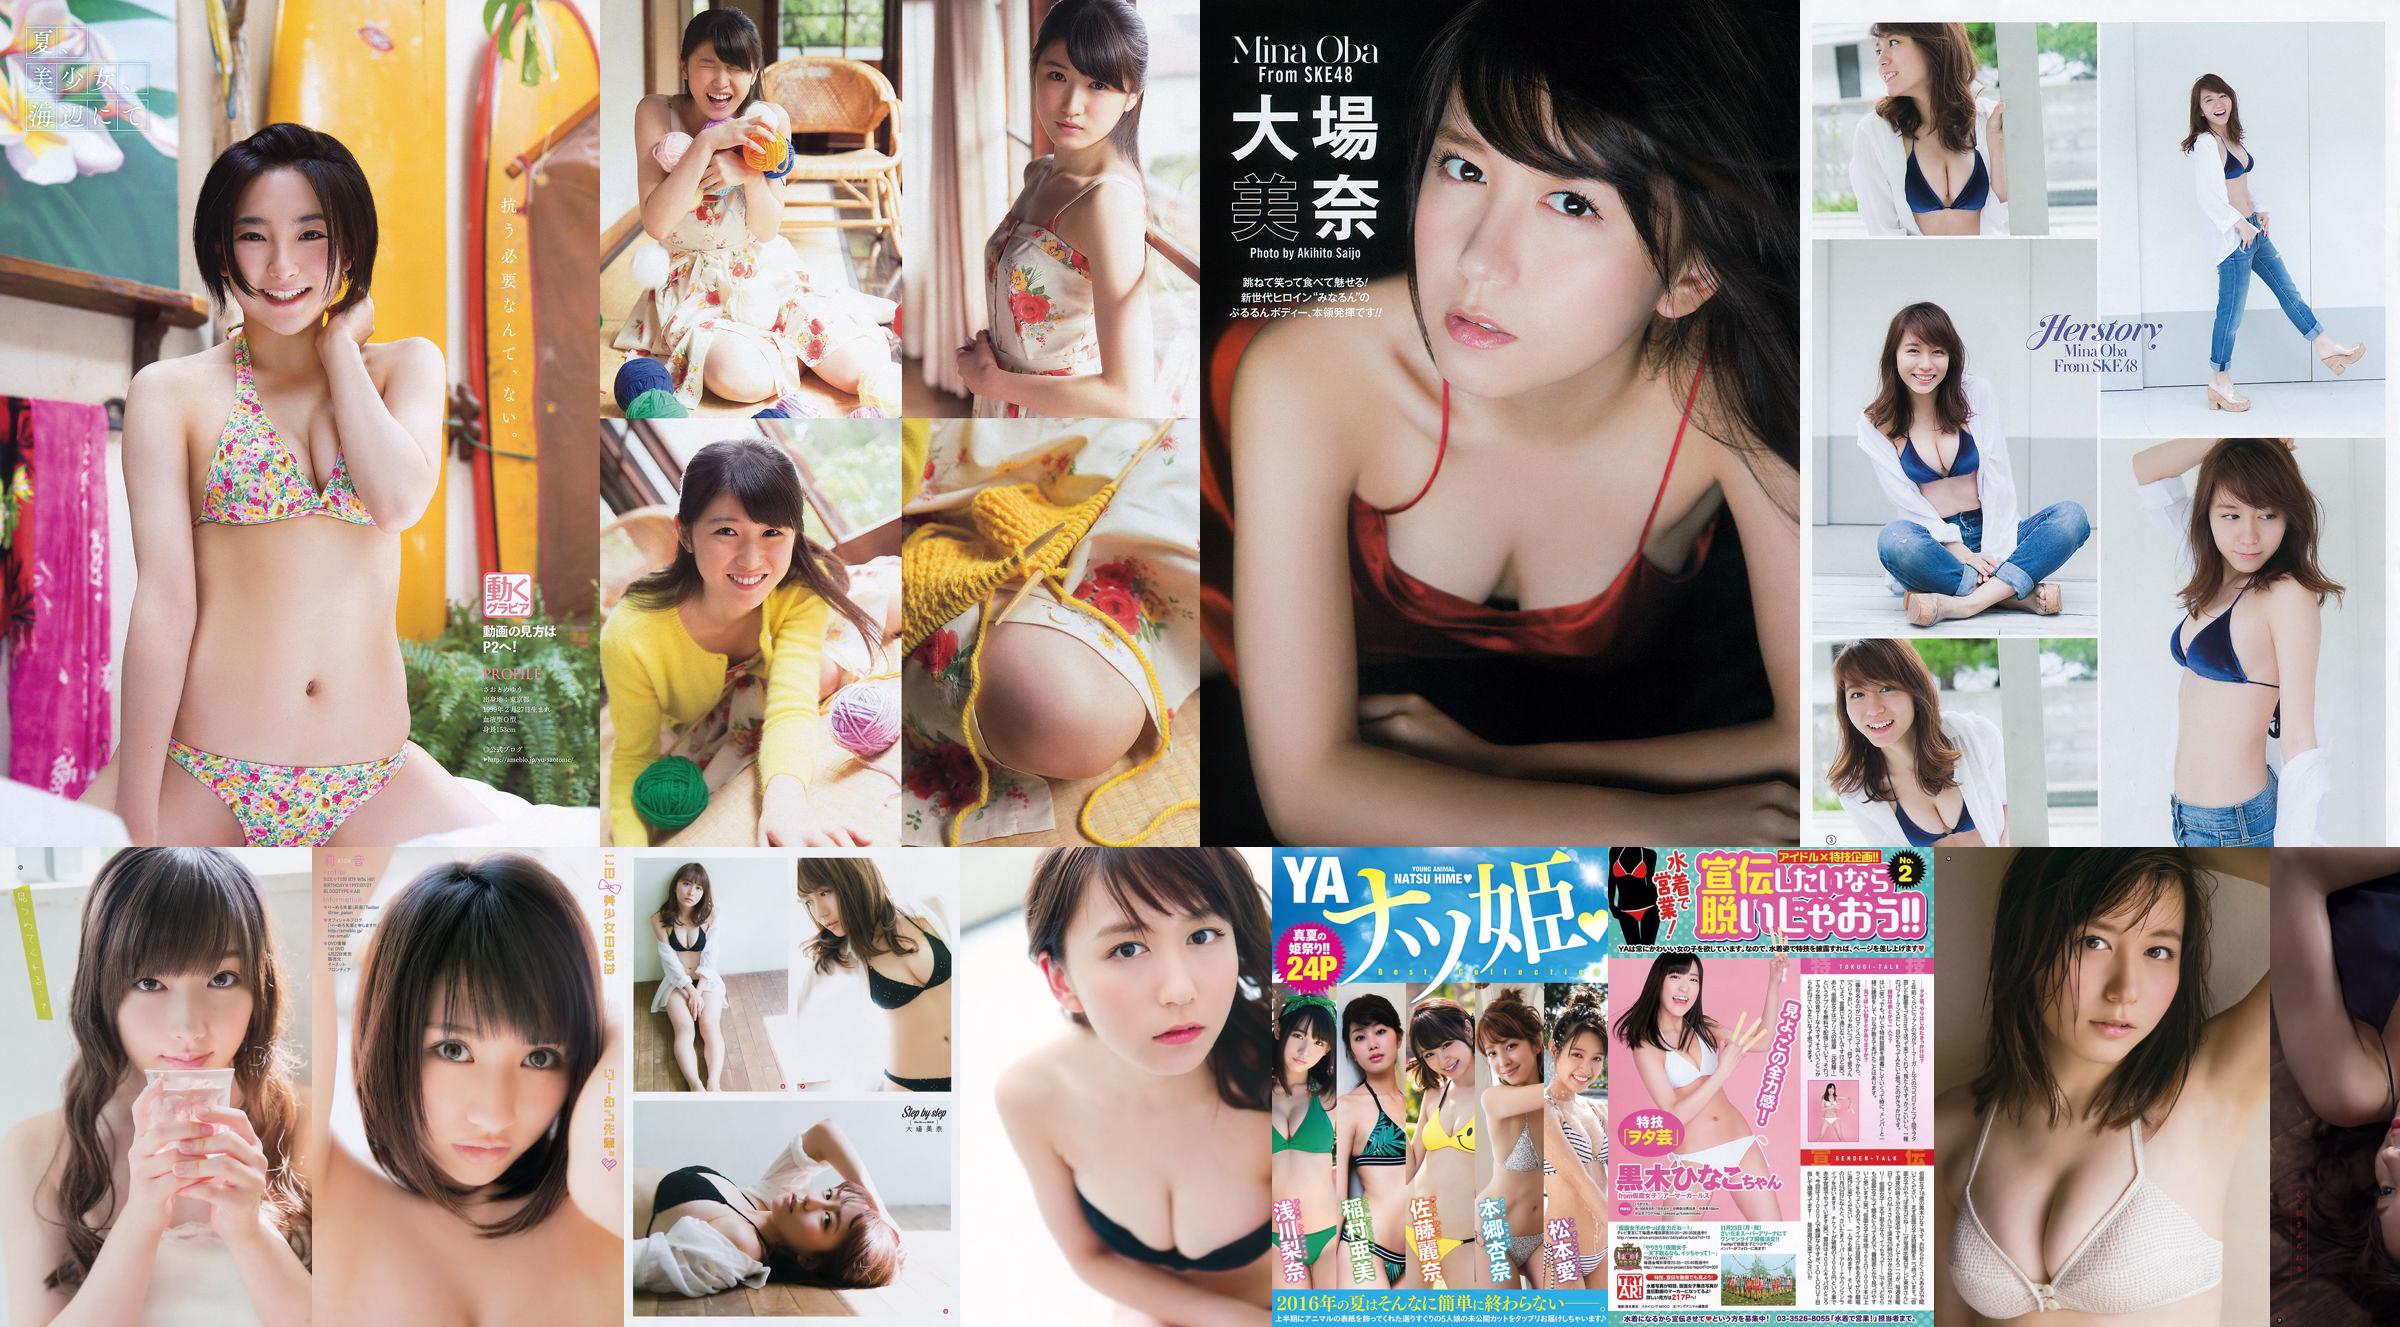 [Young Gangan] Mina Oba Mizuki Fukumura Minori Inudo Hikaru Aoyama 2014 No.21 Photograph No.3b9a19 Page 1